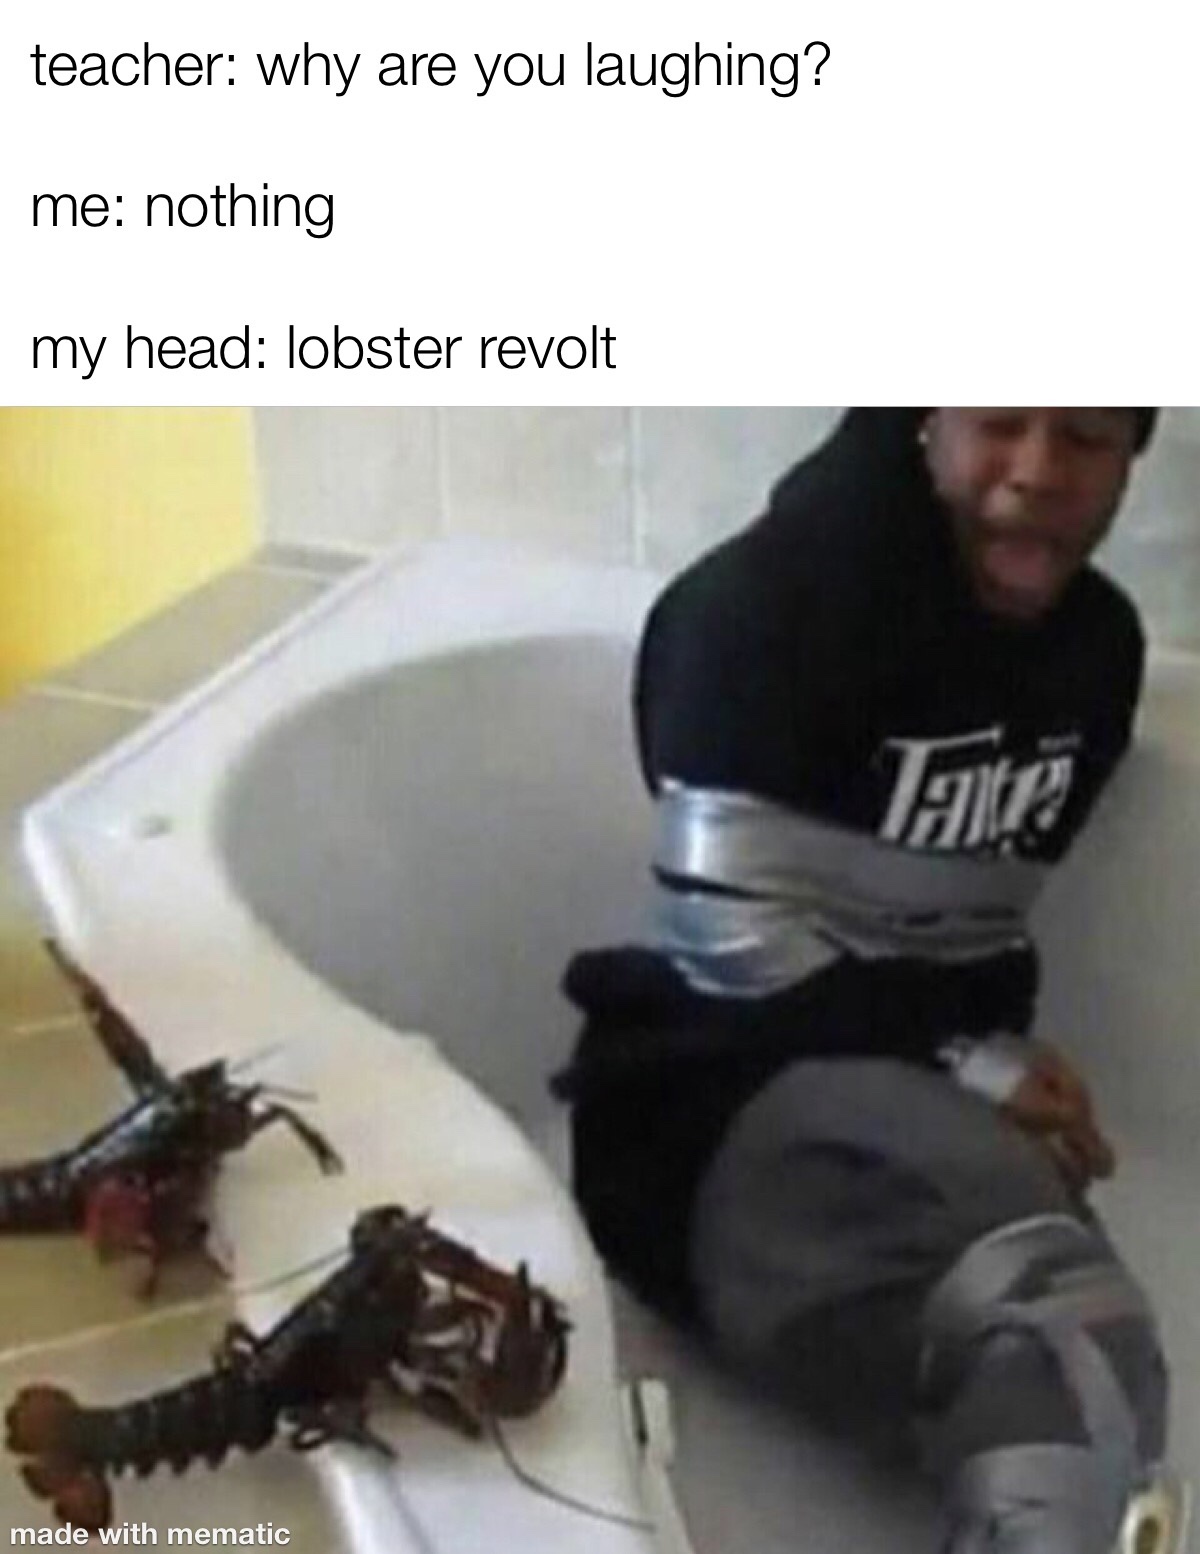 lobster revolt - meme